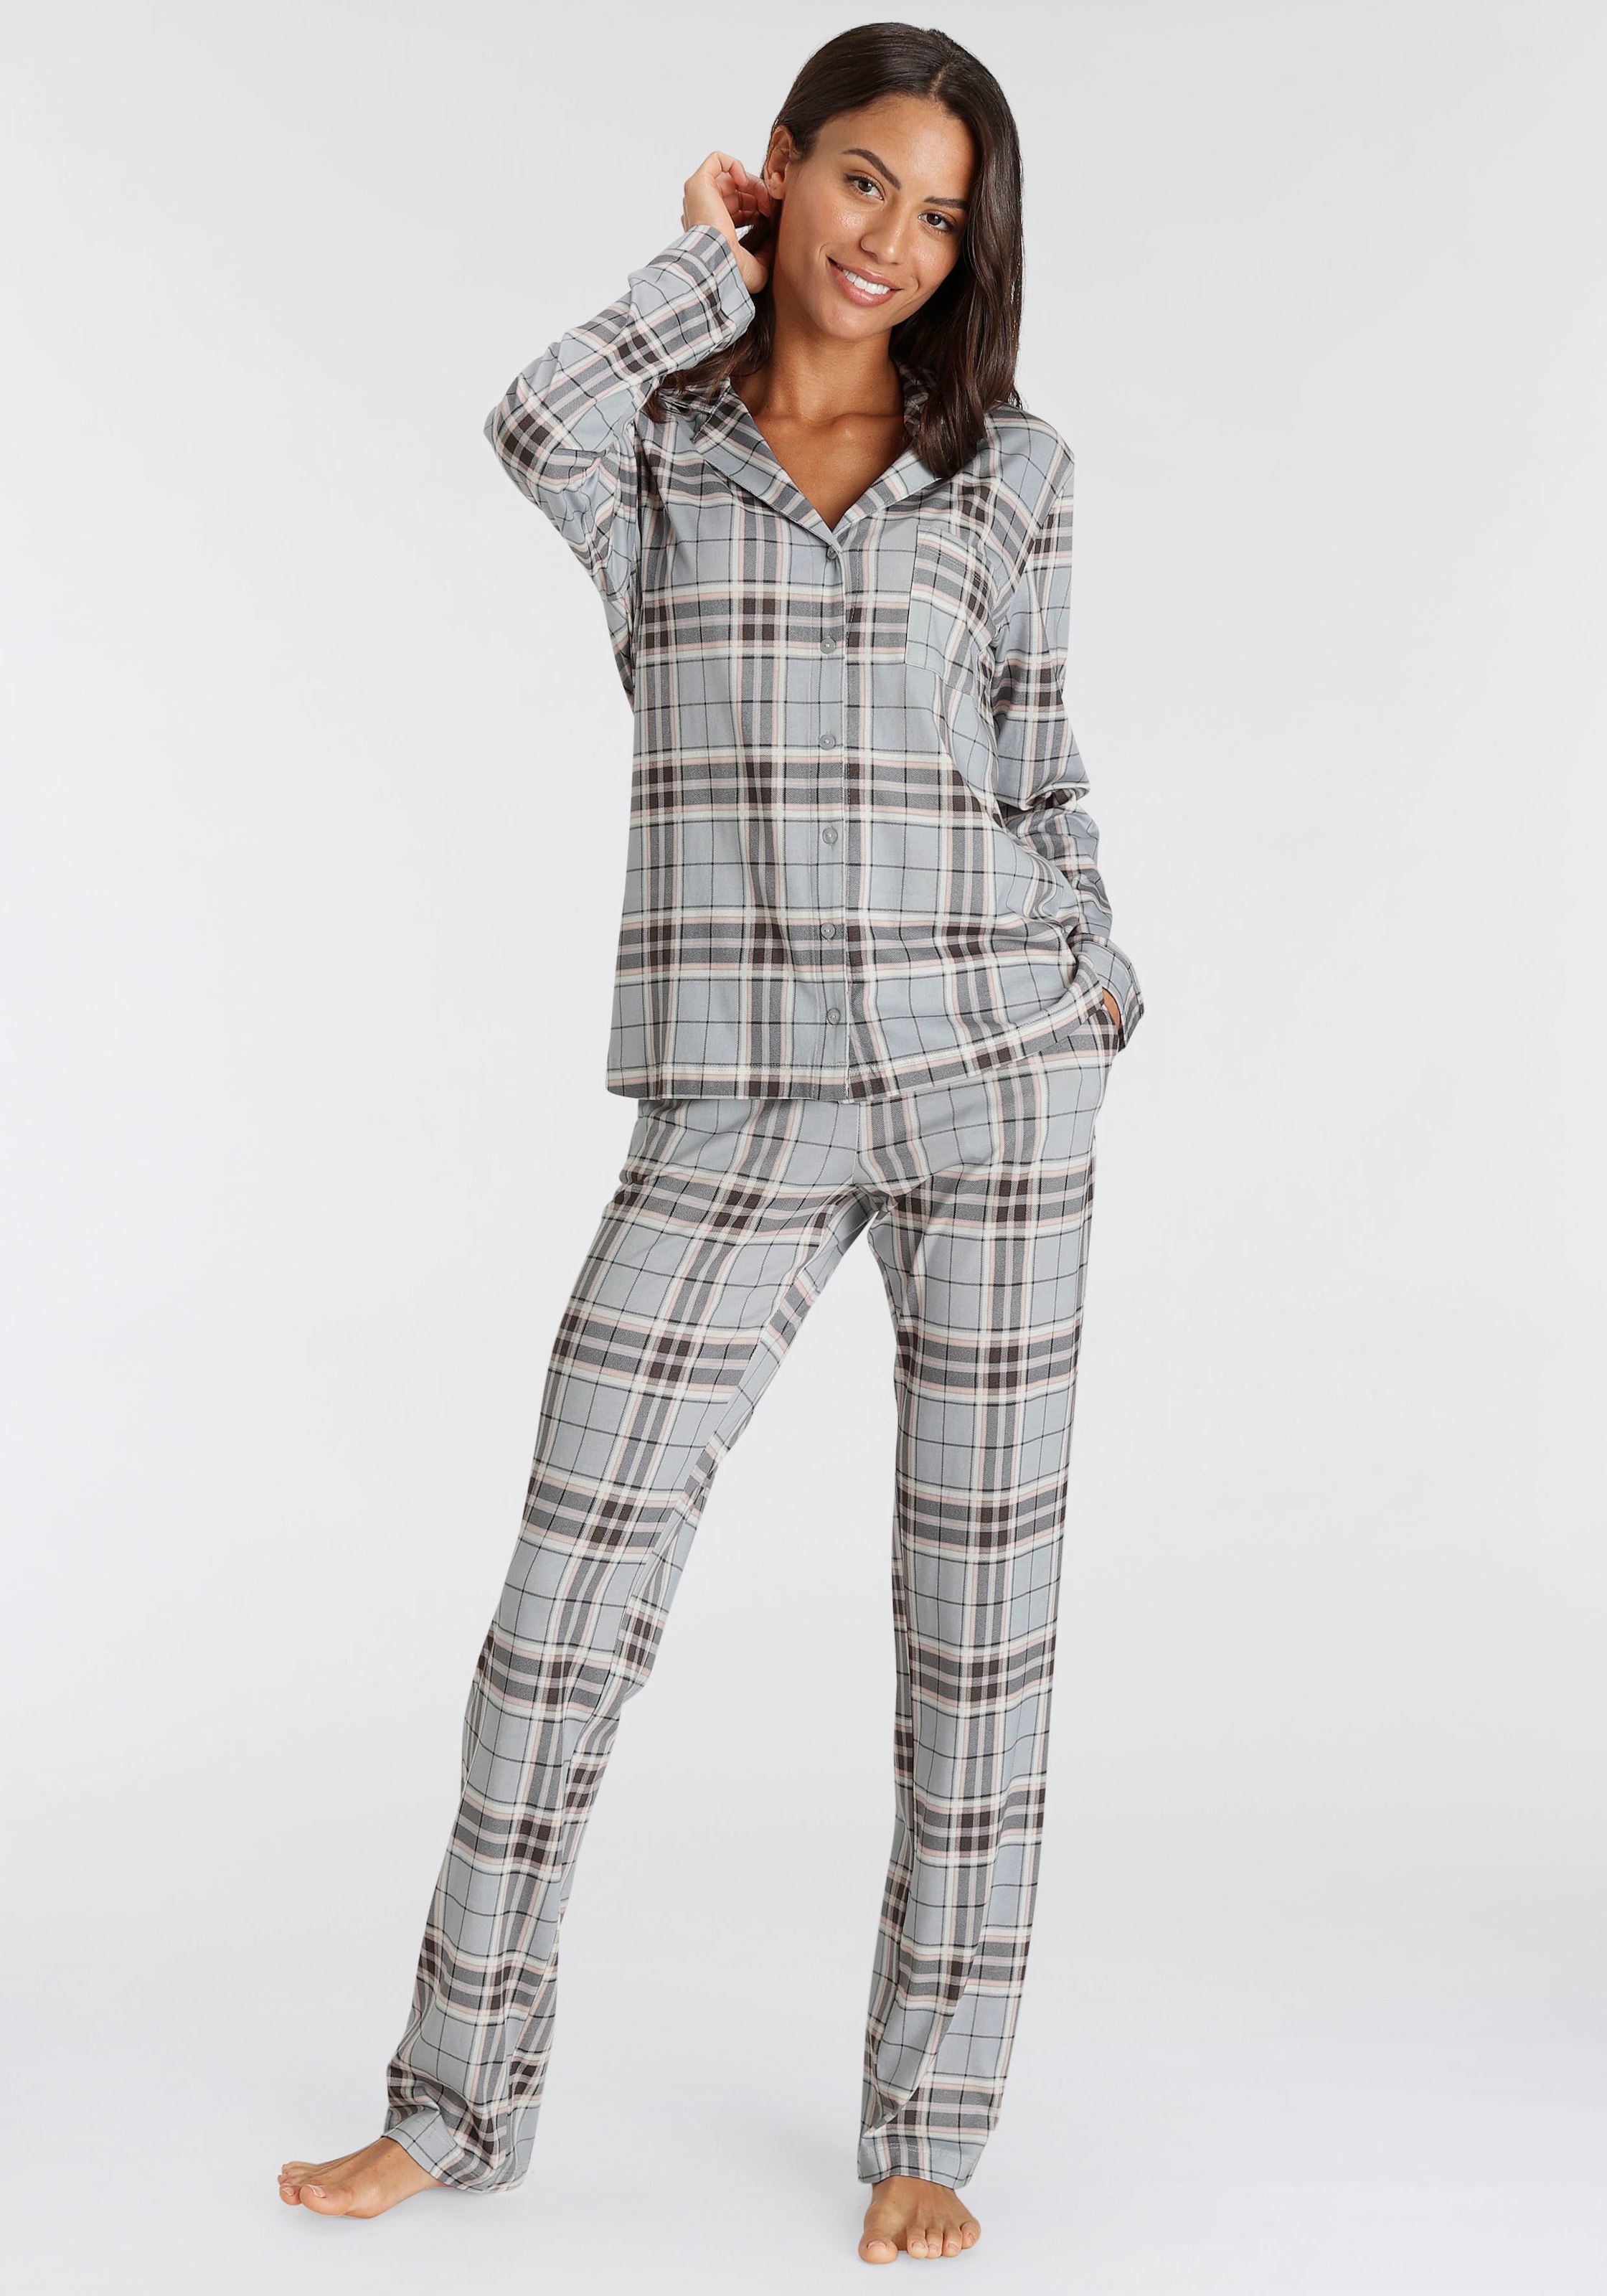 Pyjama, | schönem Muster UNIVERSAL kaufen (2 tlg.), s.Oliver mit